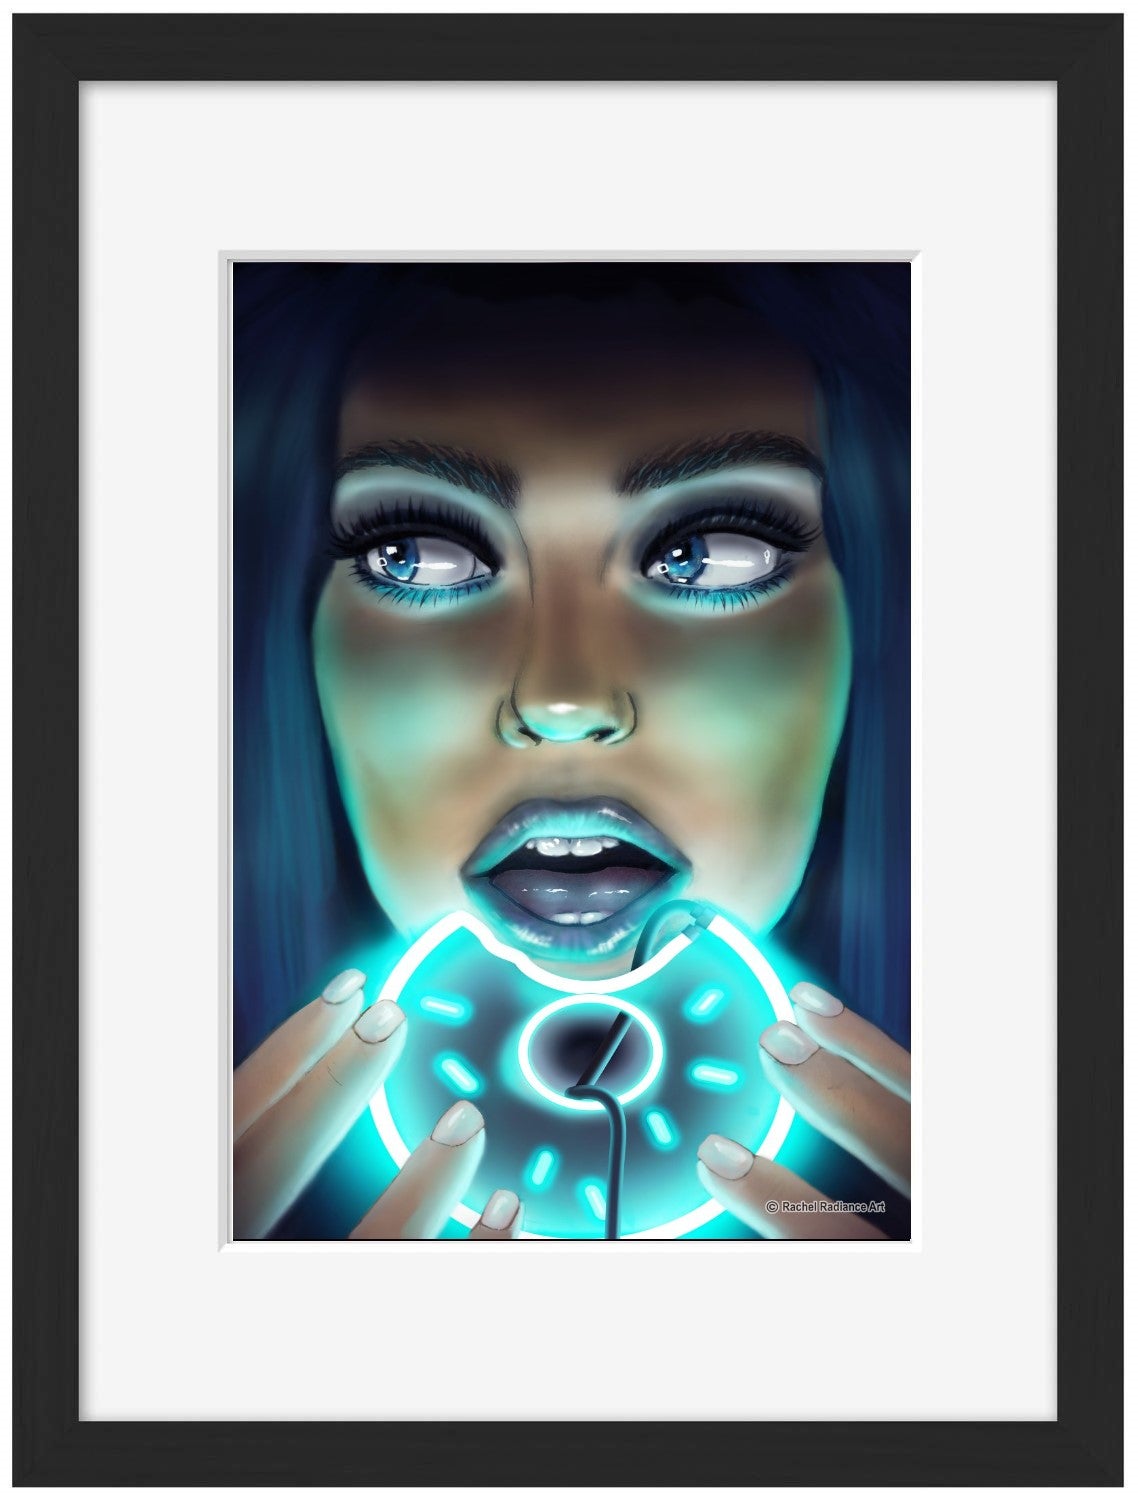 Donut Girl-neon-art, print-Framed Print-30 x 40 cm-BLUE SHAKER